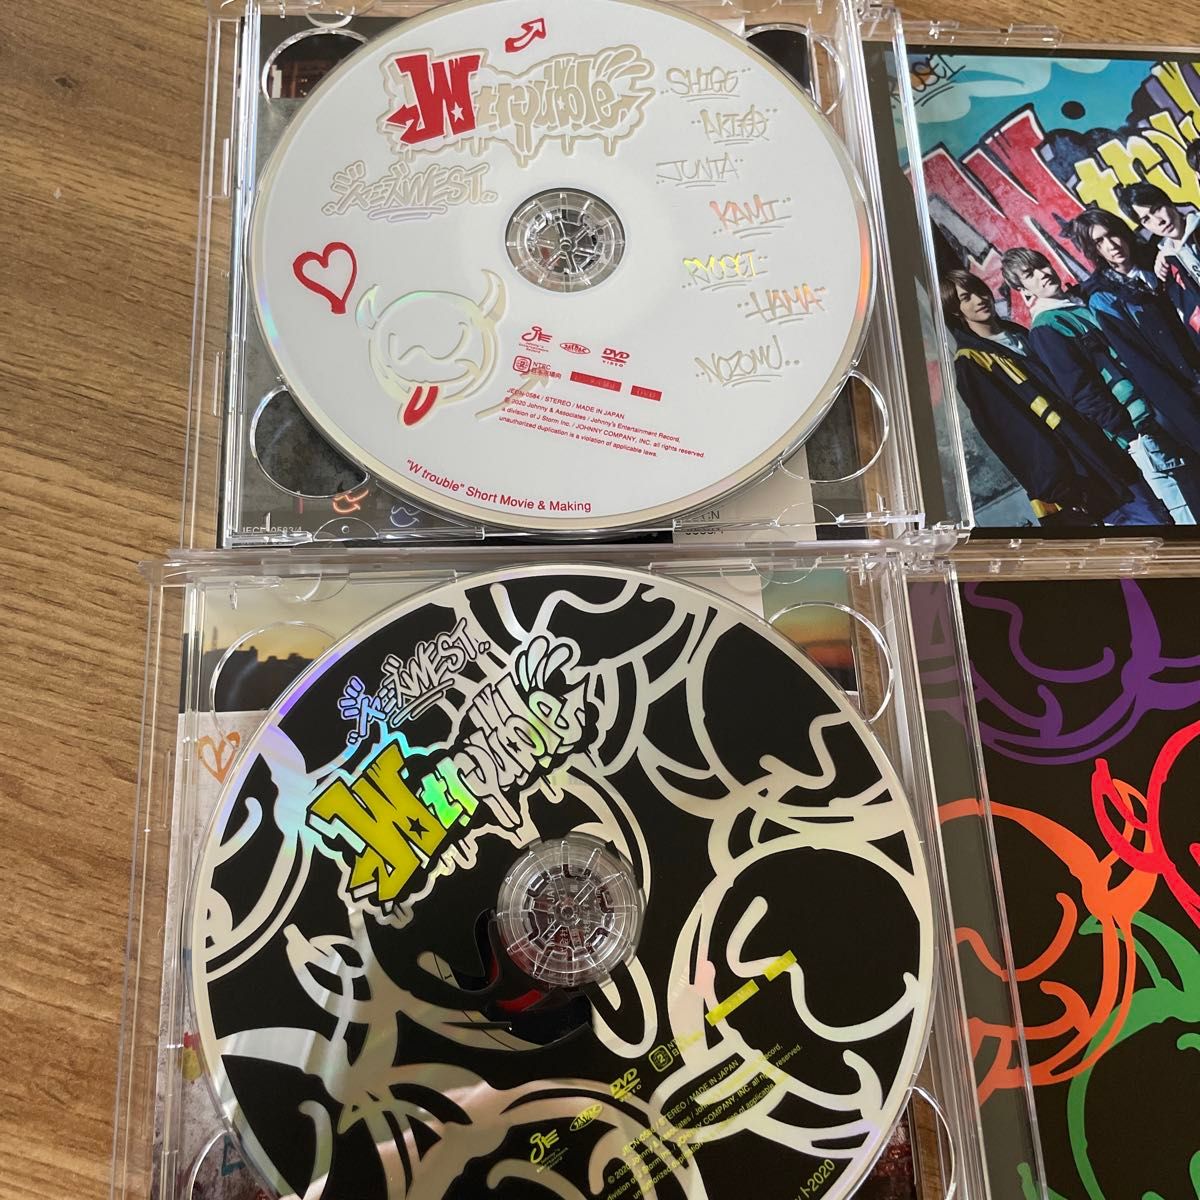 ジャニーズ WEST 「W trouble」 初回盤A 初回盤B 通常盤　アルバム3形態セット　早期特典ステッカー付き3種類